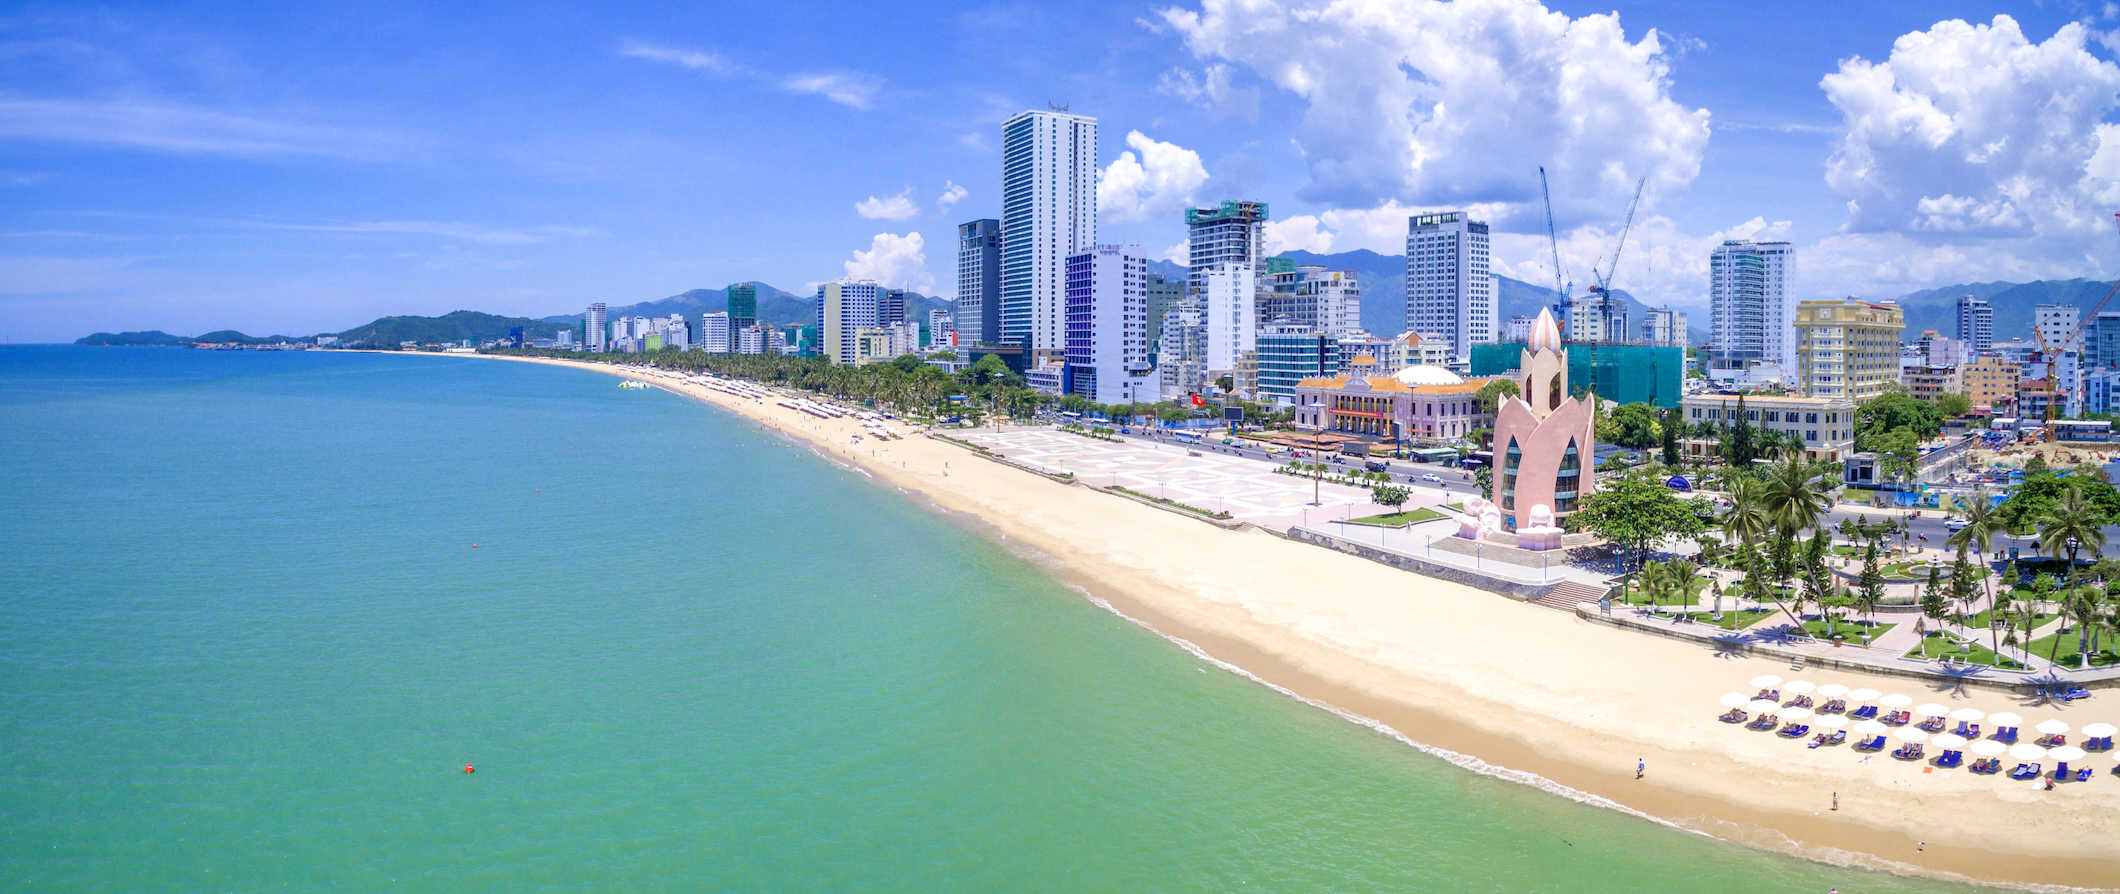 Cena da praia na costa de Nhazhang, Vietnã, com um horizonte da cidade se elevando ao longo da costa